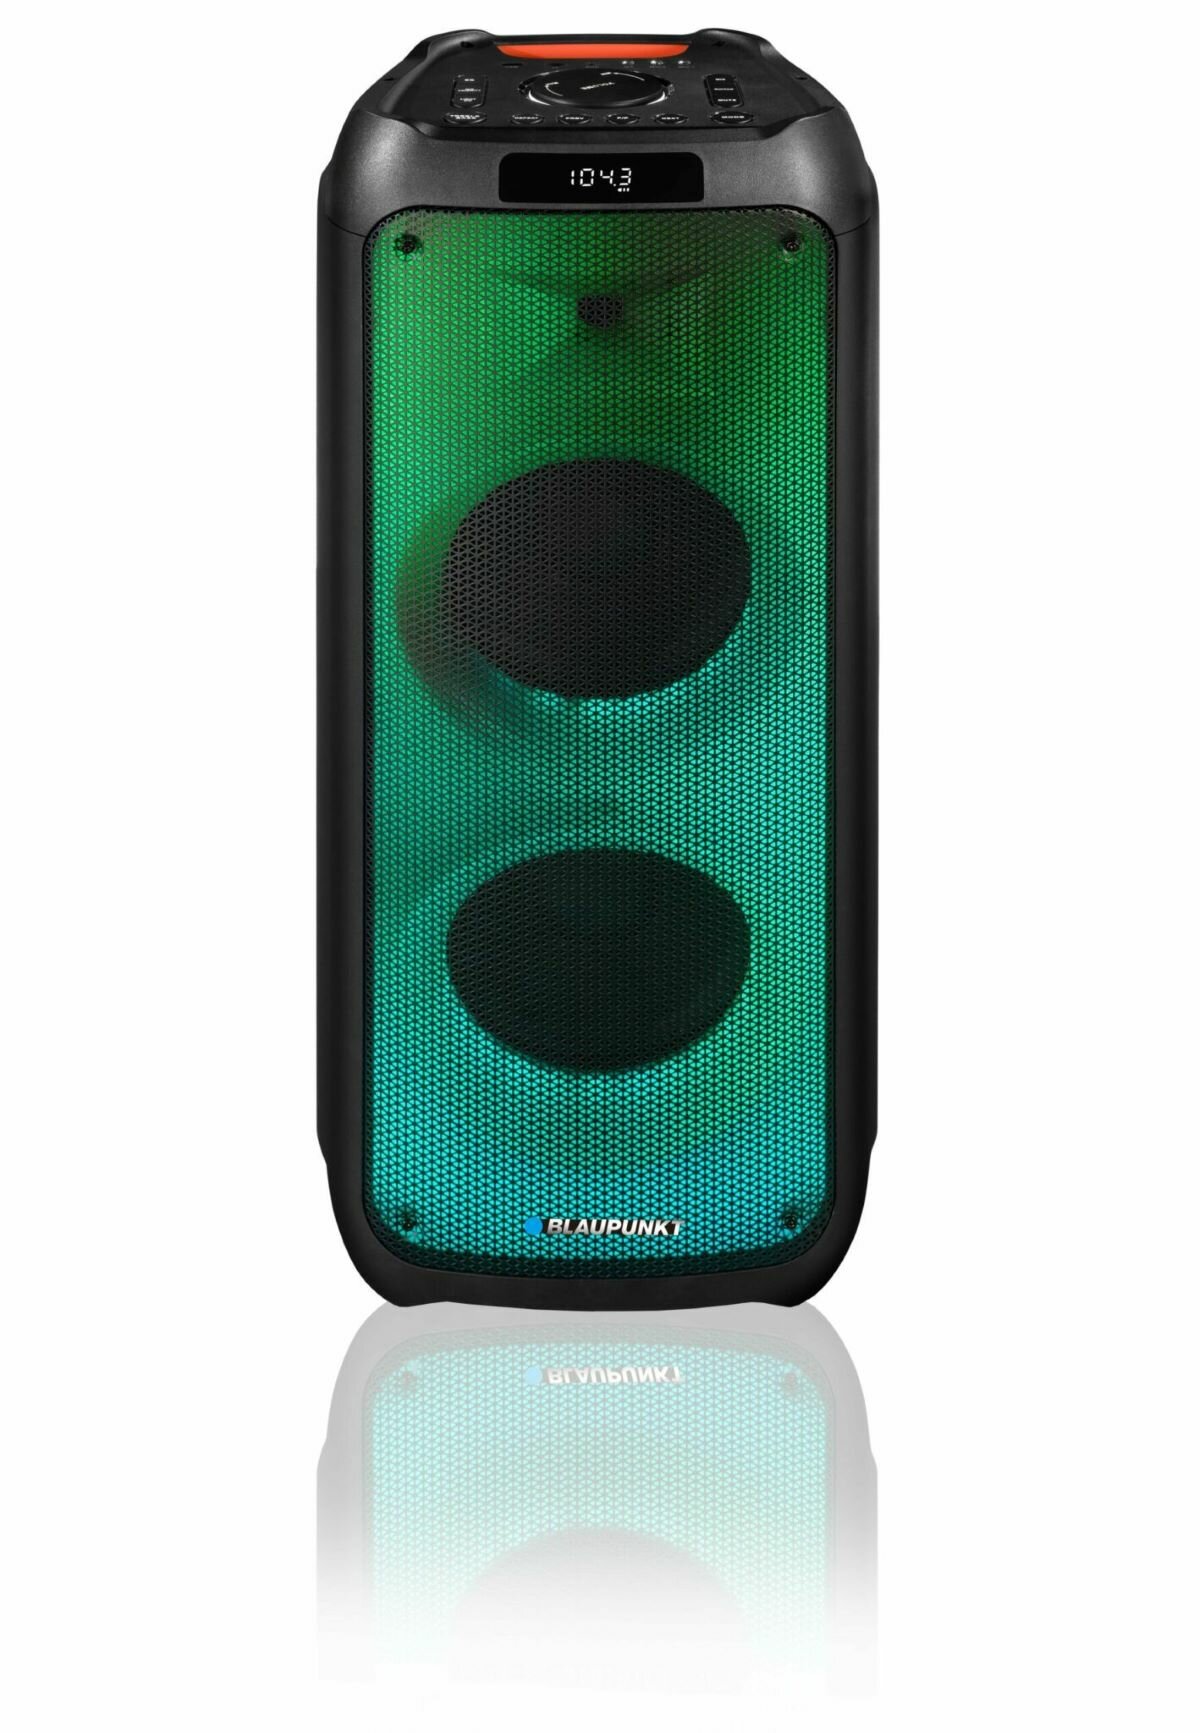 Głośnik Blaupunkt PB10DB głośnik przodem oświetlony na zielono